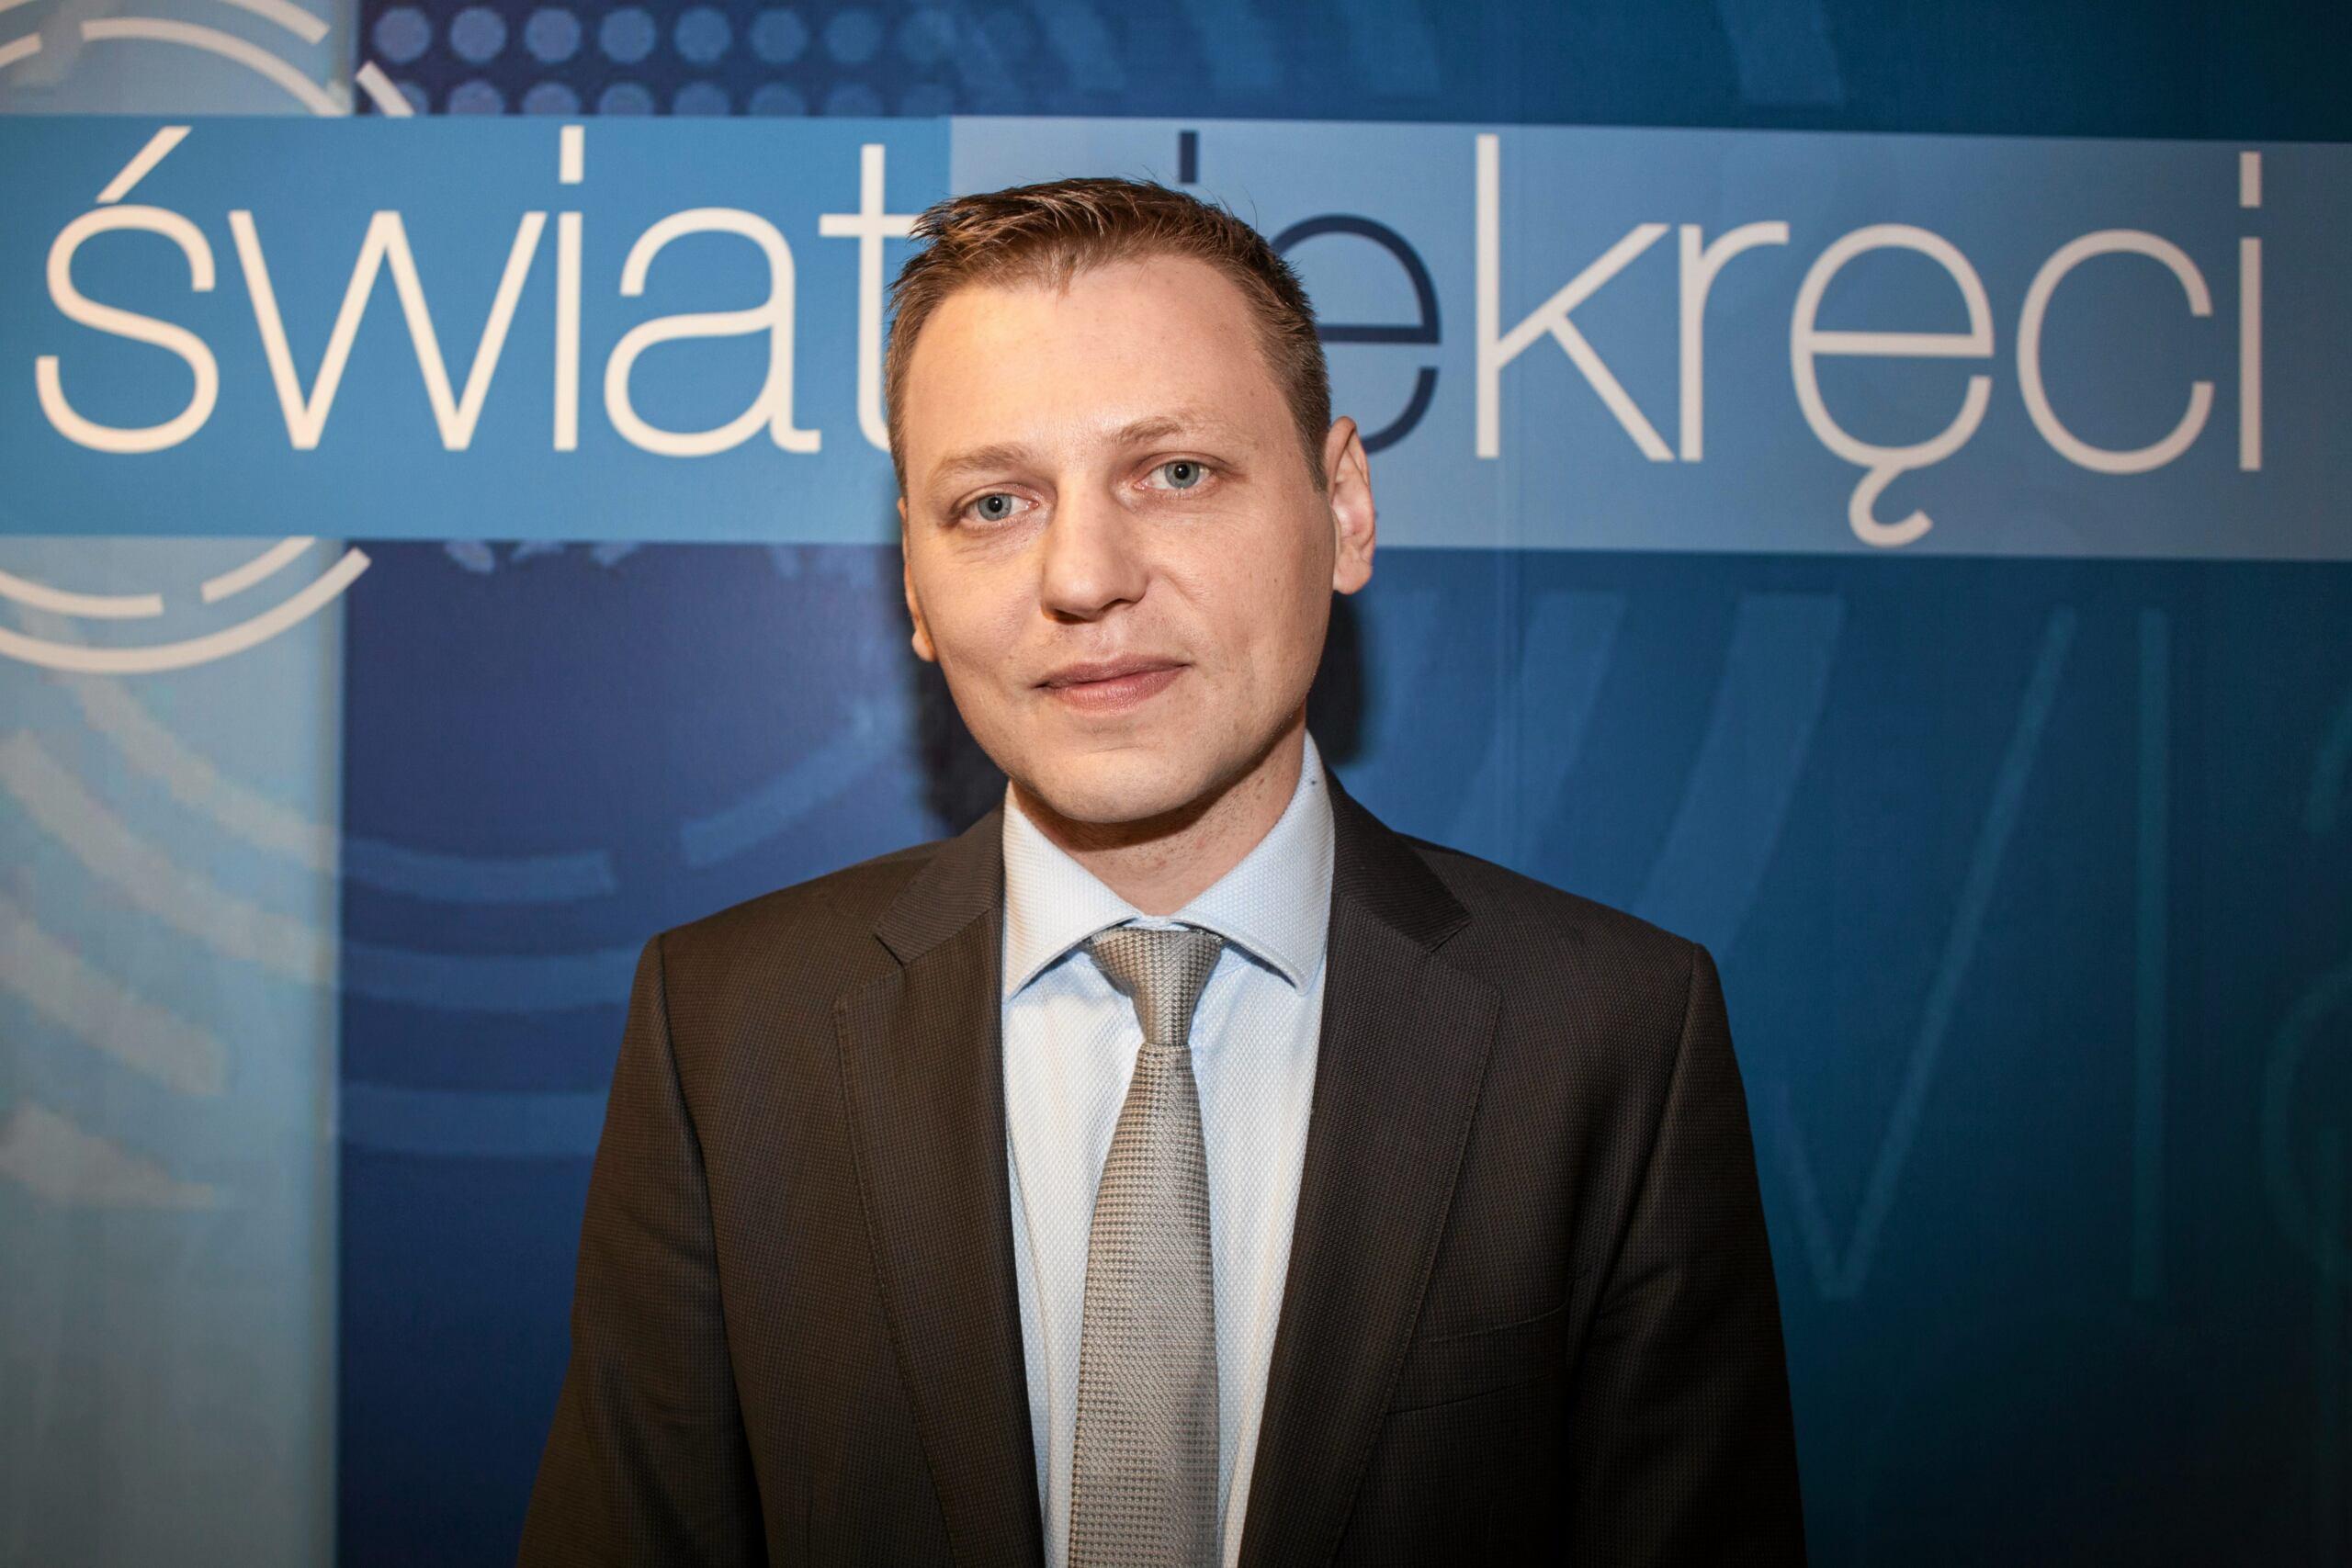 01.04.2014 Warszawa , TVP . Norbert Maliszewski - wydawca programu " Swiat sie kreci " .
Fot. Julia Mafalda / Agencja Wyborcza.pl